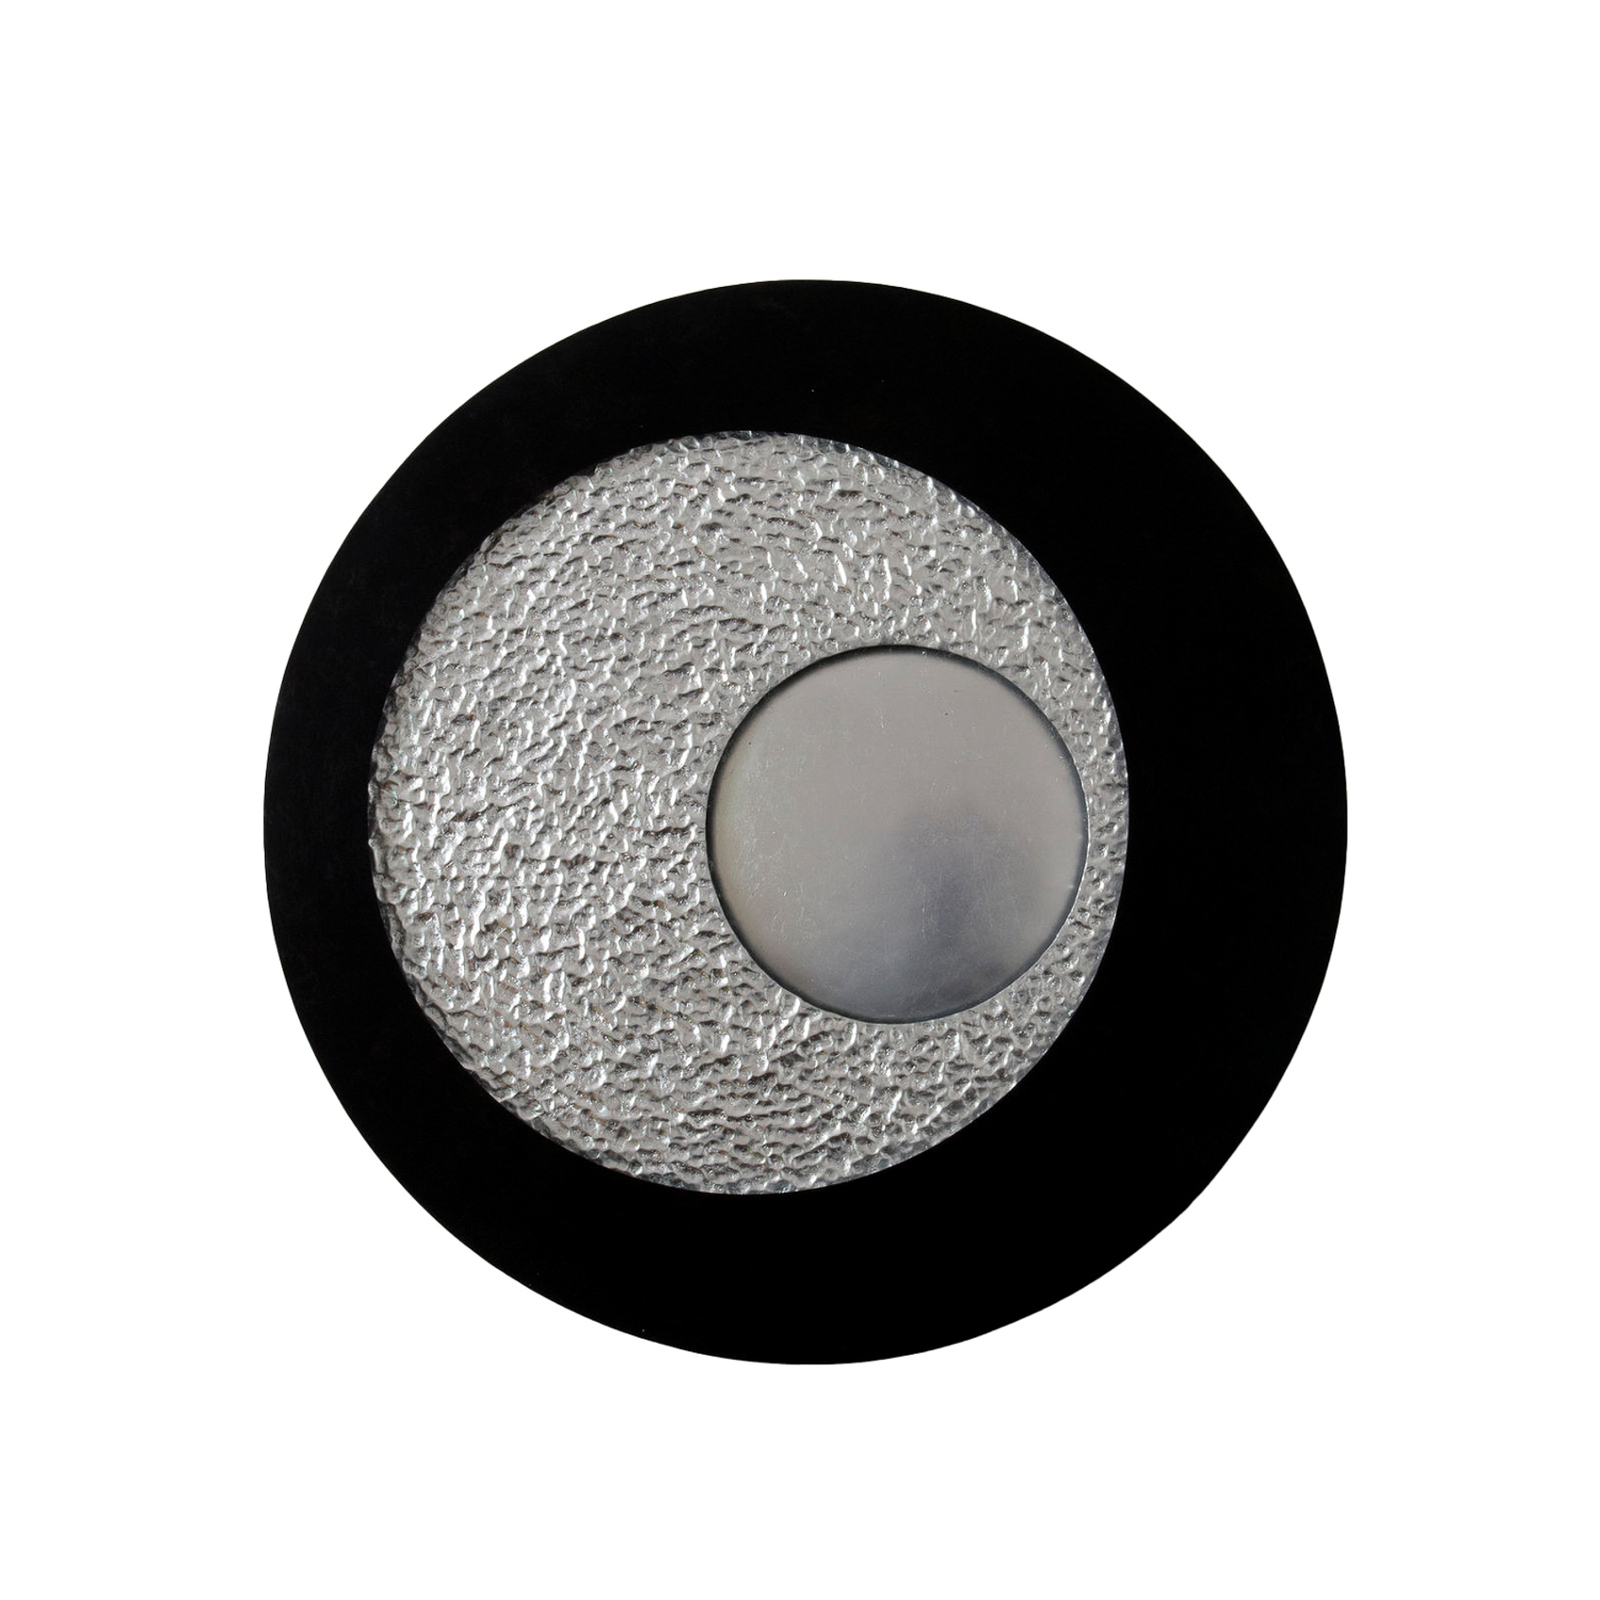 Urano LED fali lámpa, barna-fekete/ezüst, Ø 85 cm, vasaló